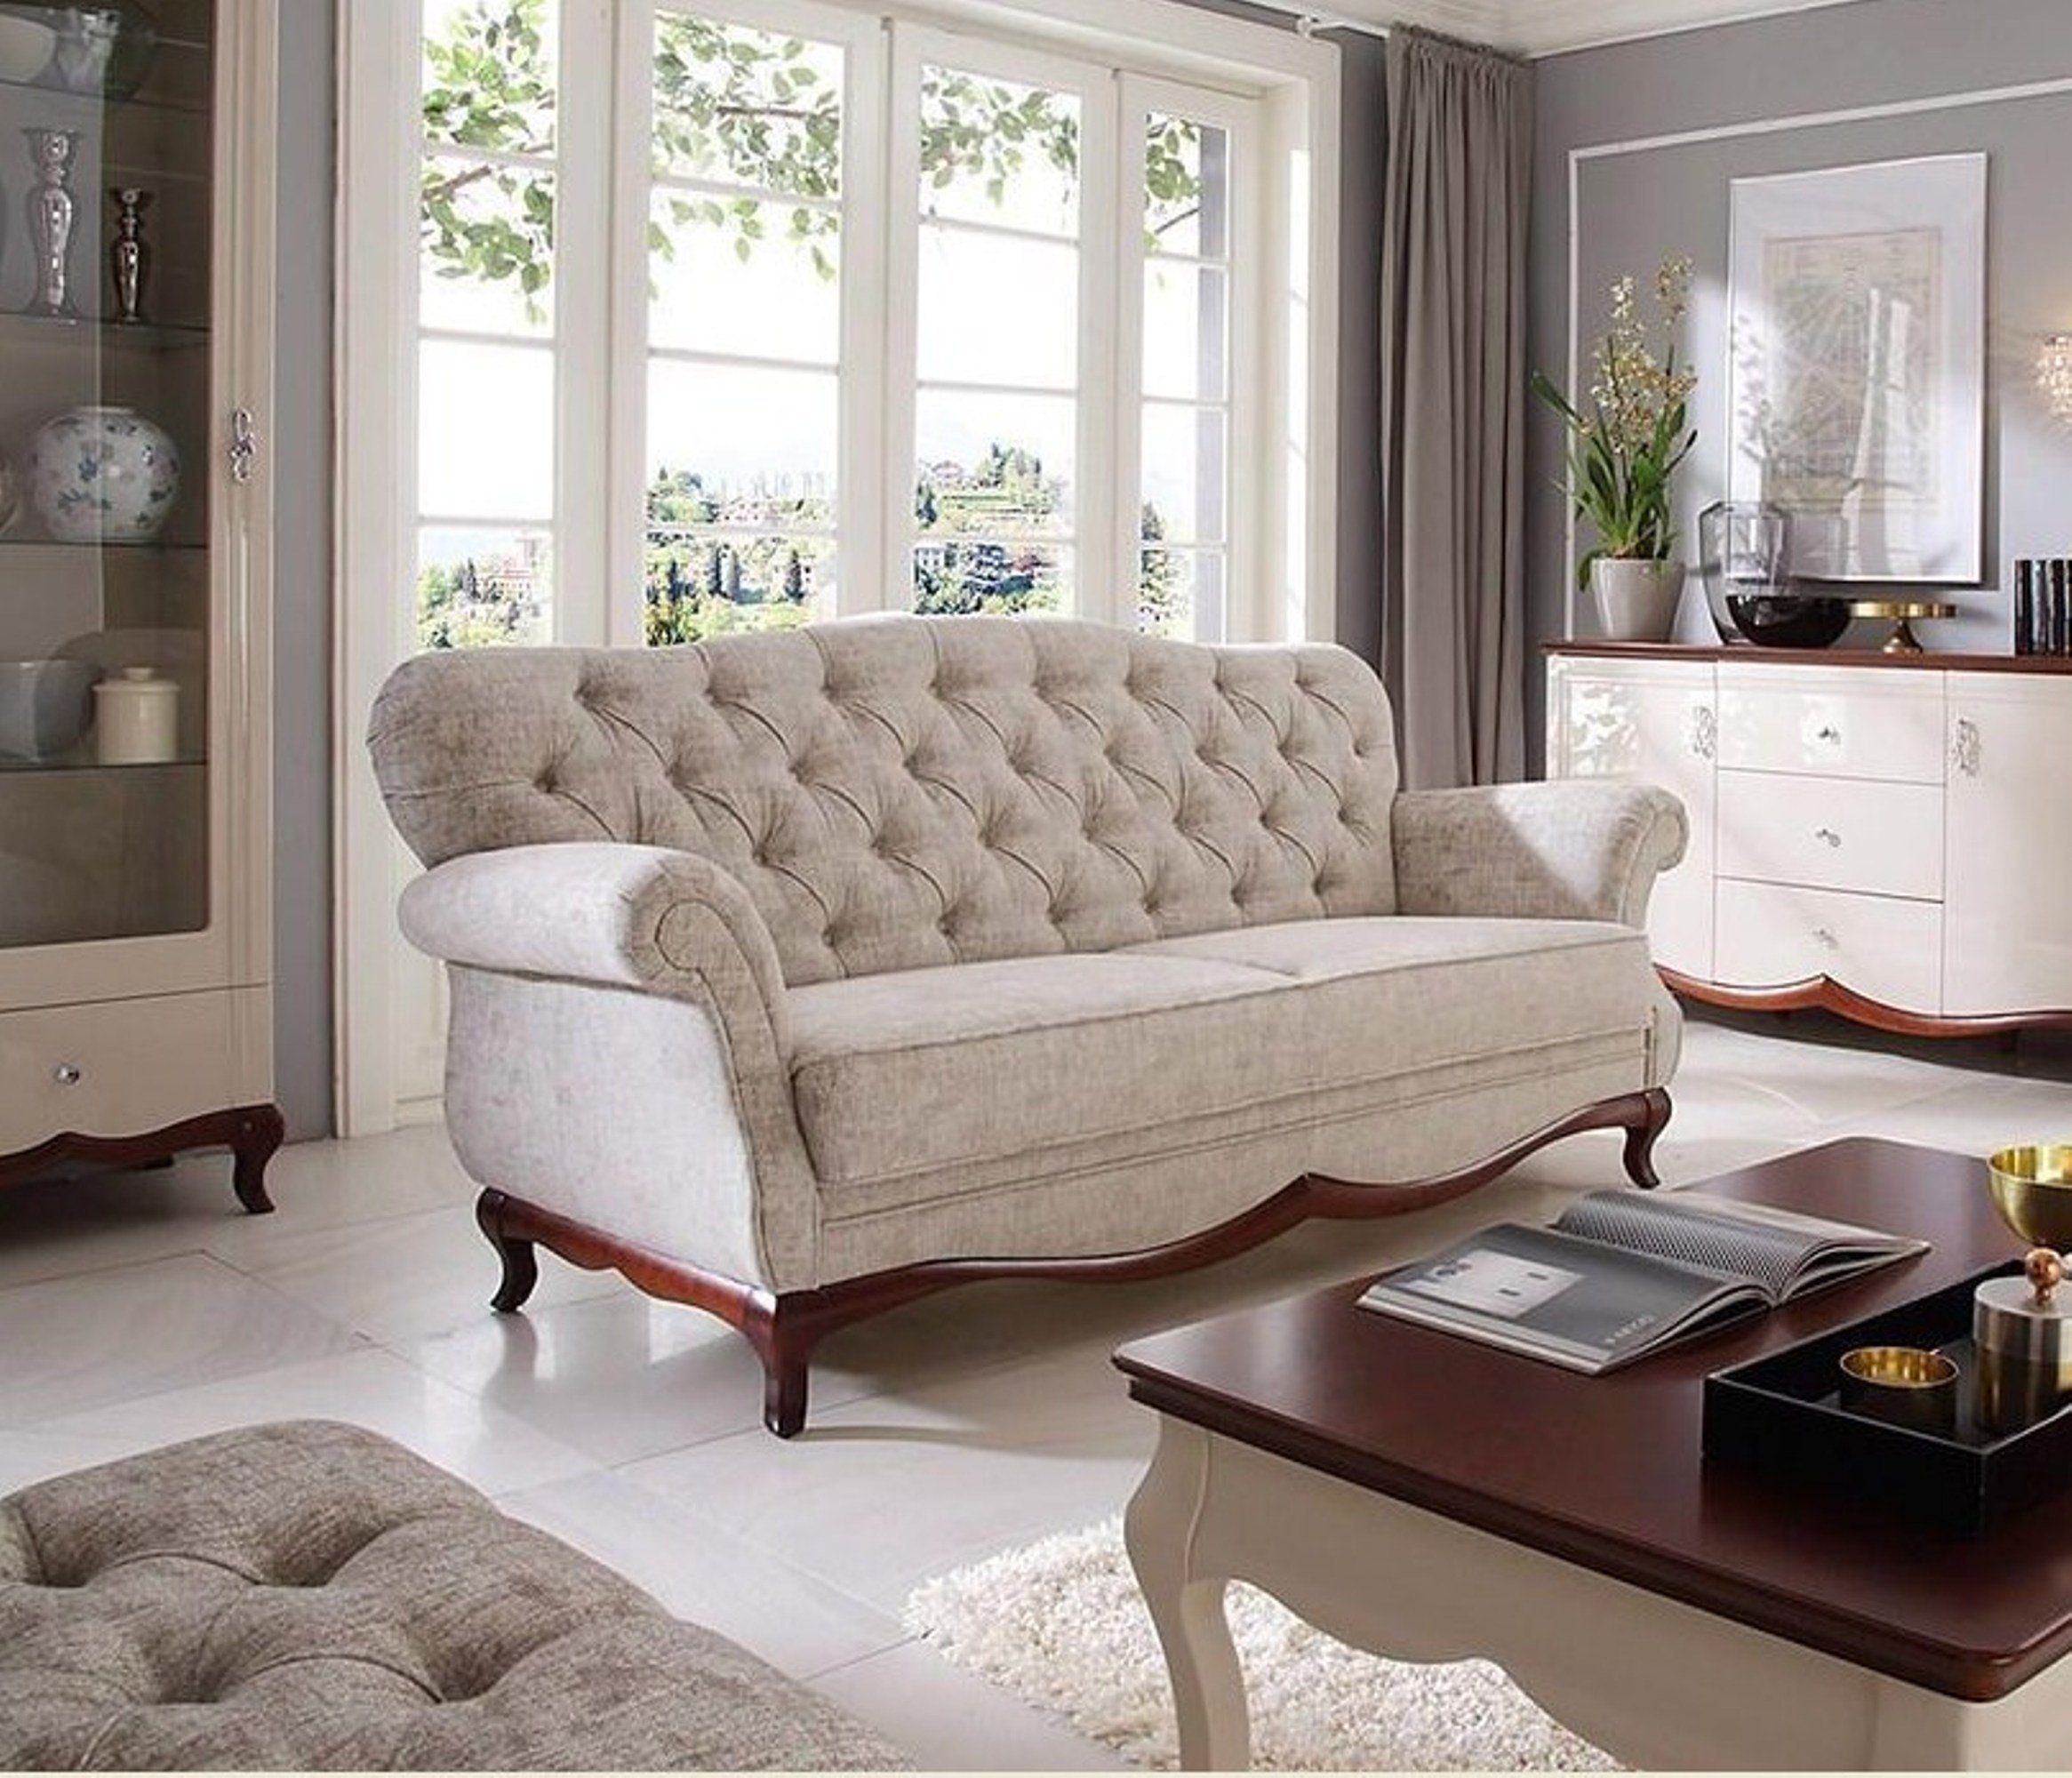 JVmoebel Sofa Designer Beige Chesterfield Coch 3 Sitzer Polster Wohnzimmer Sofas, Made in Europe